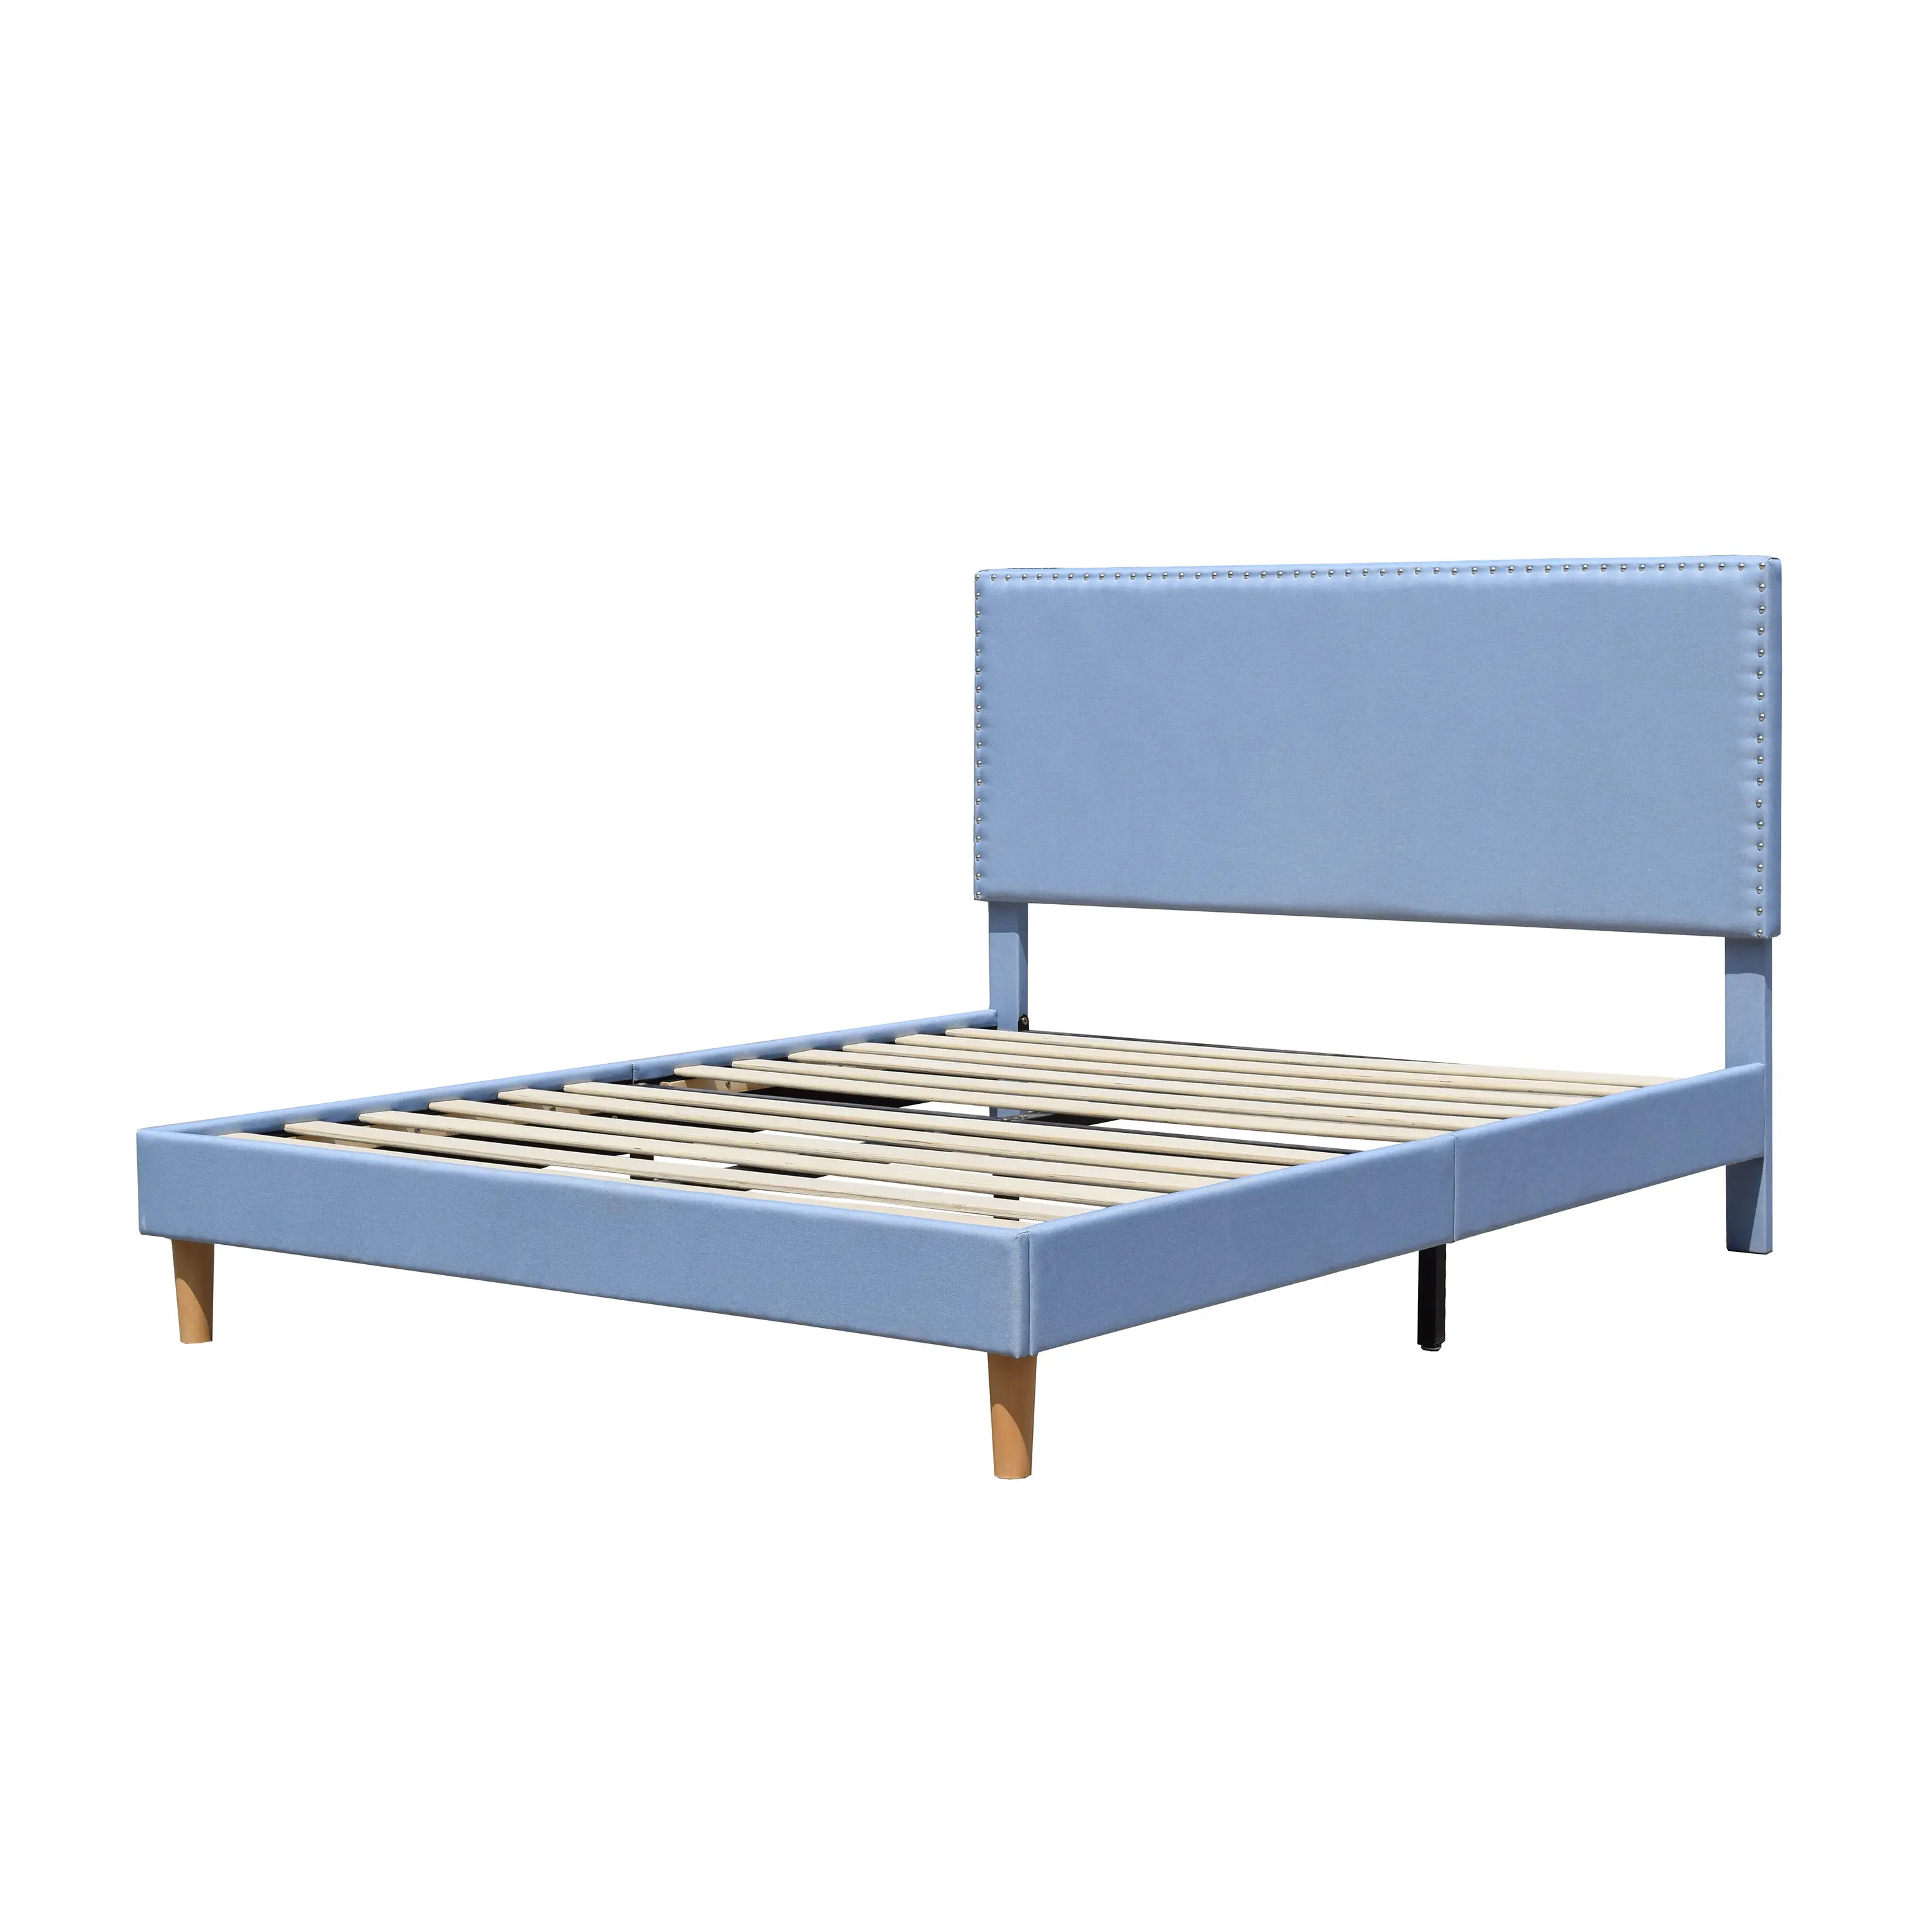 Estilo americano precio barato tejido de lino azul cabecera ajustable doble reina rey tamaño de un paquete de cartón marco de la cama